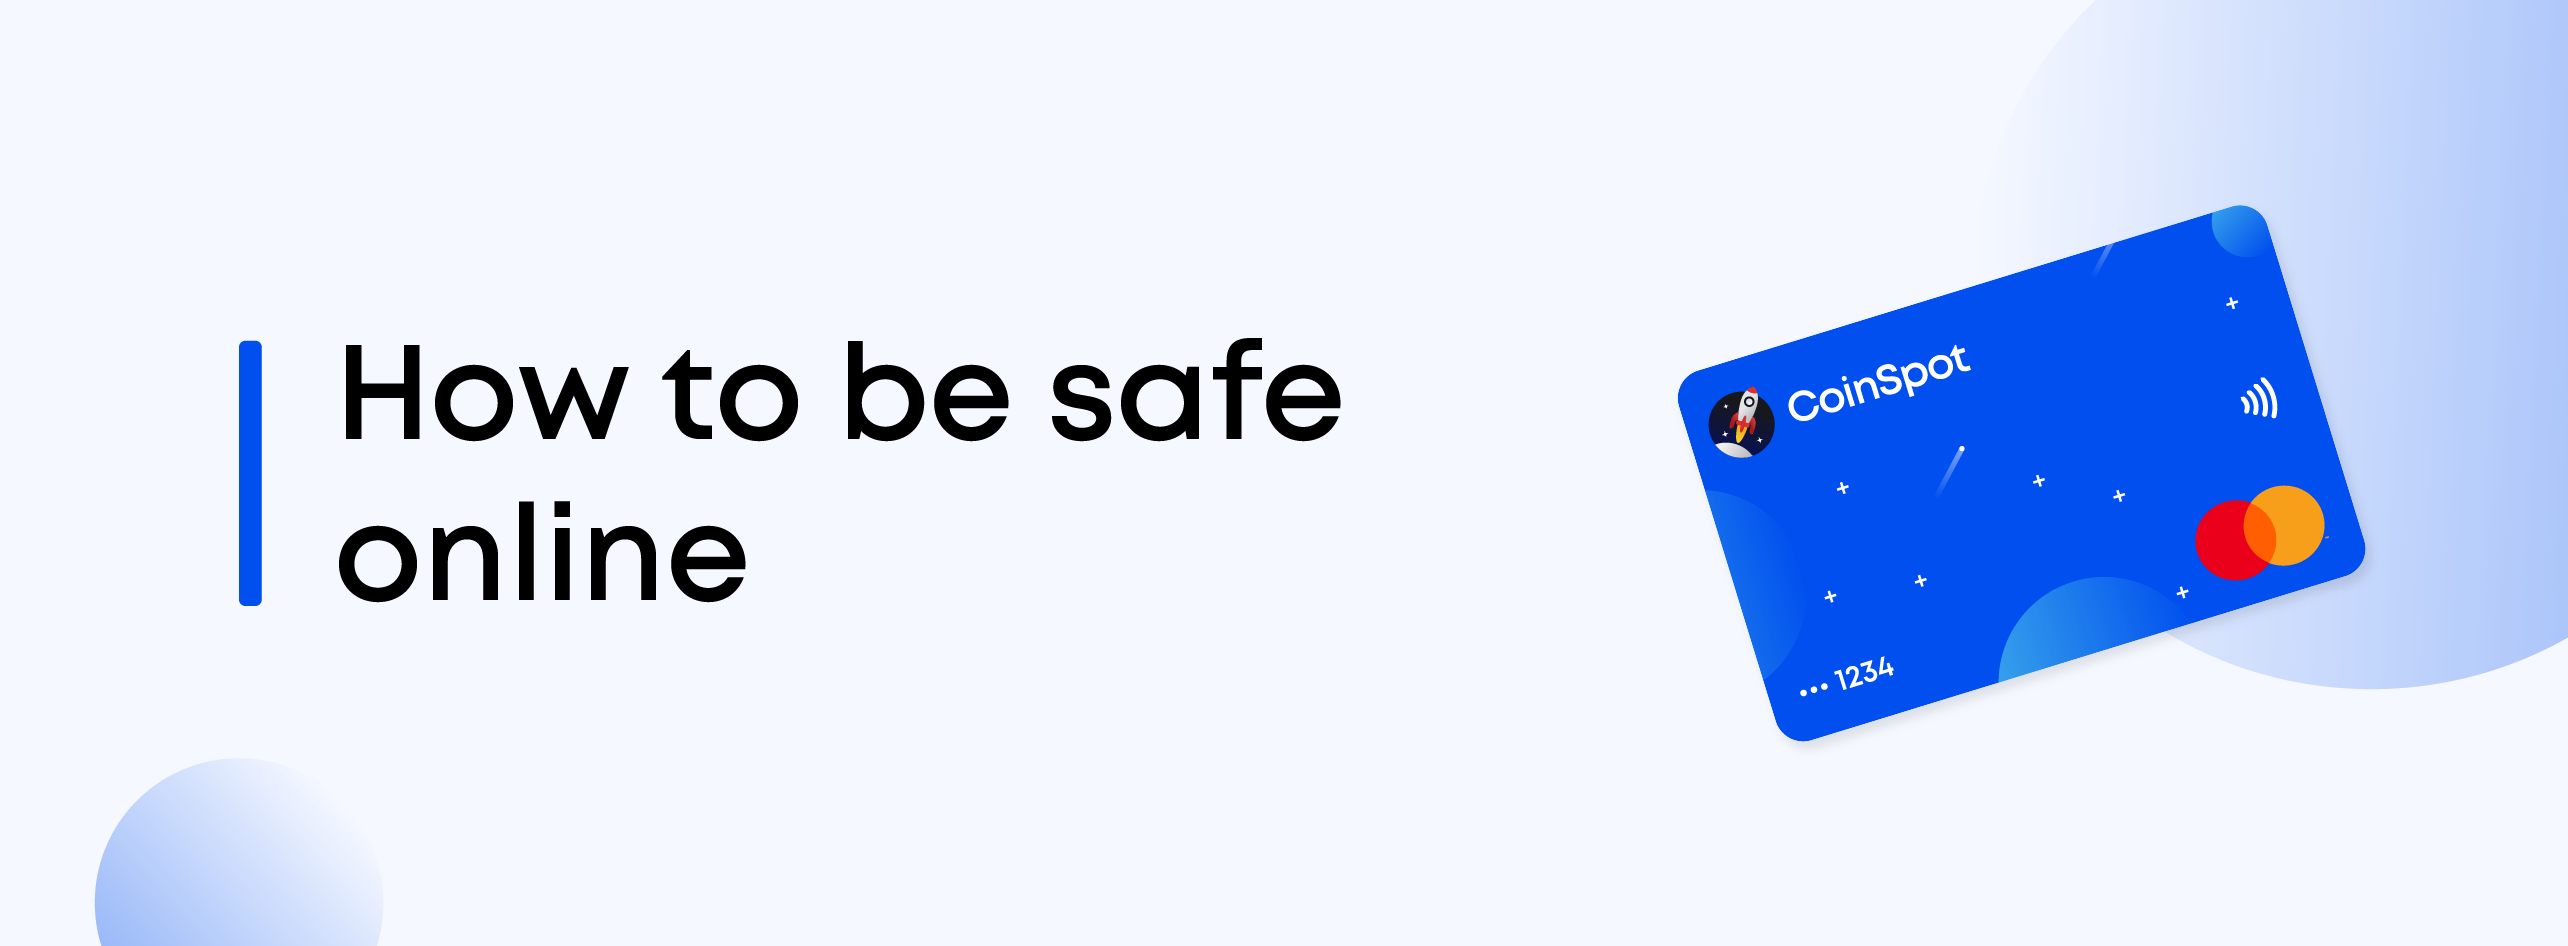 Be_safe_online.png